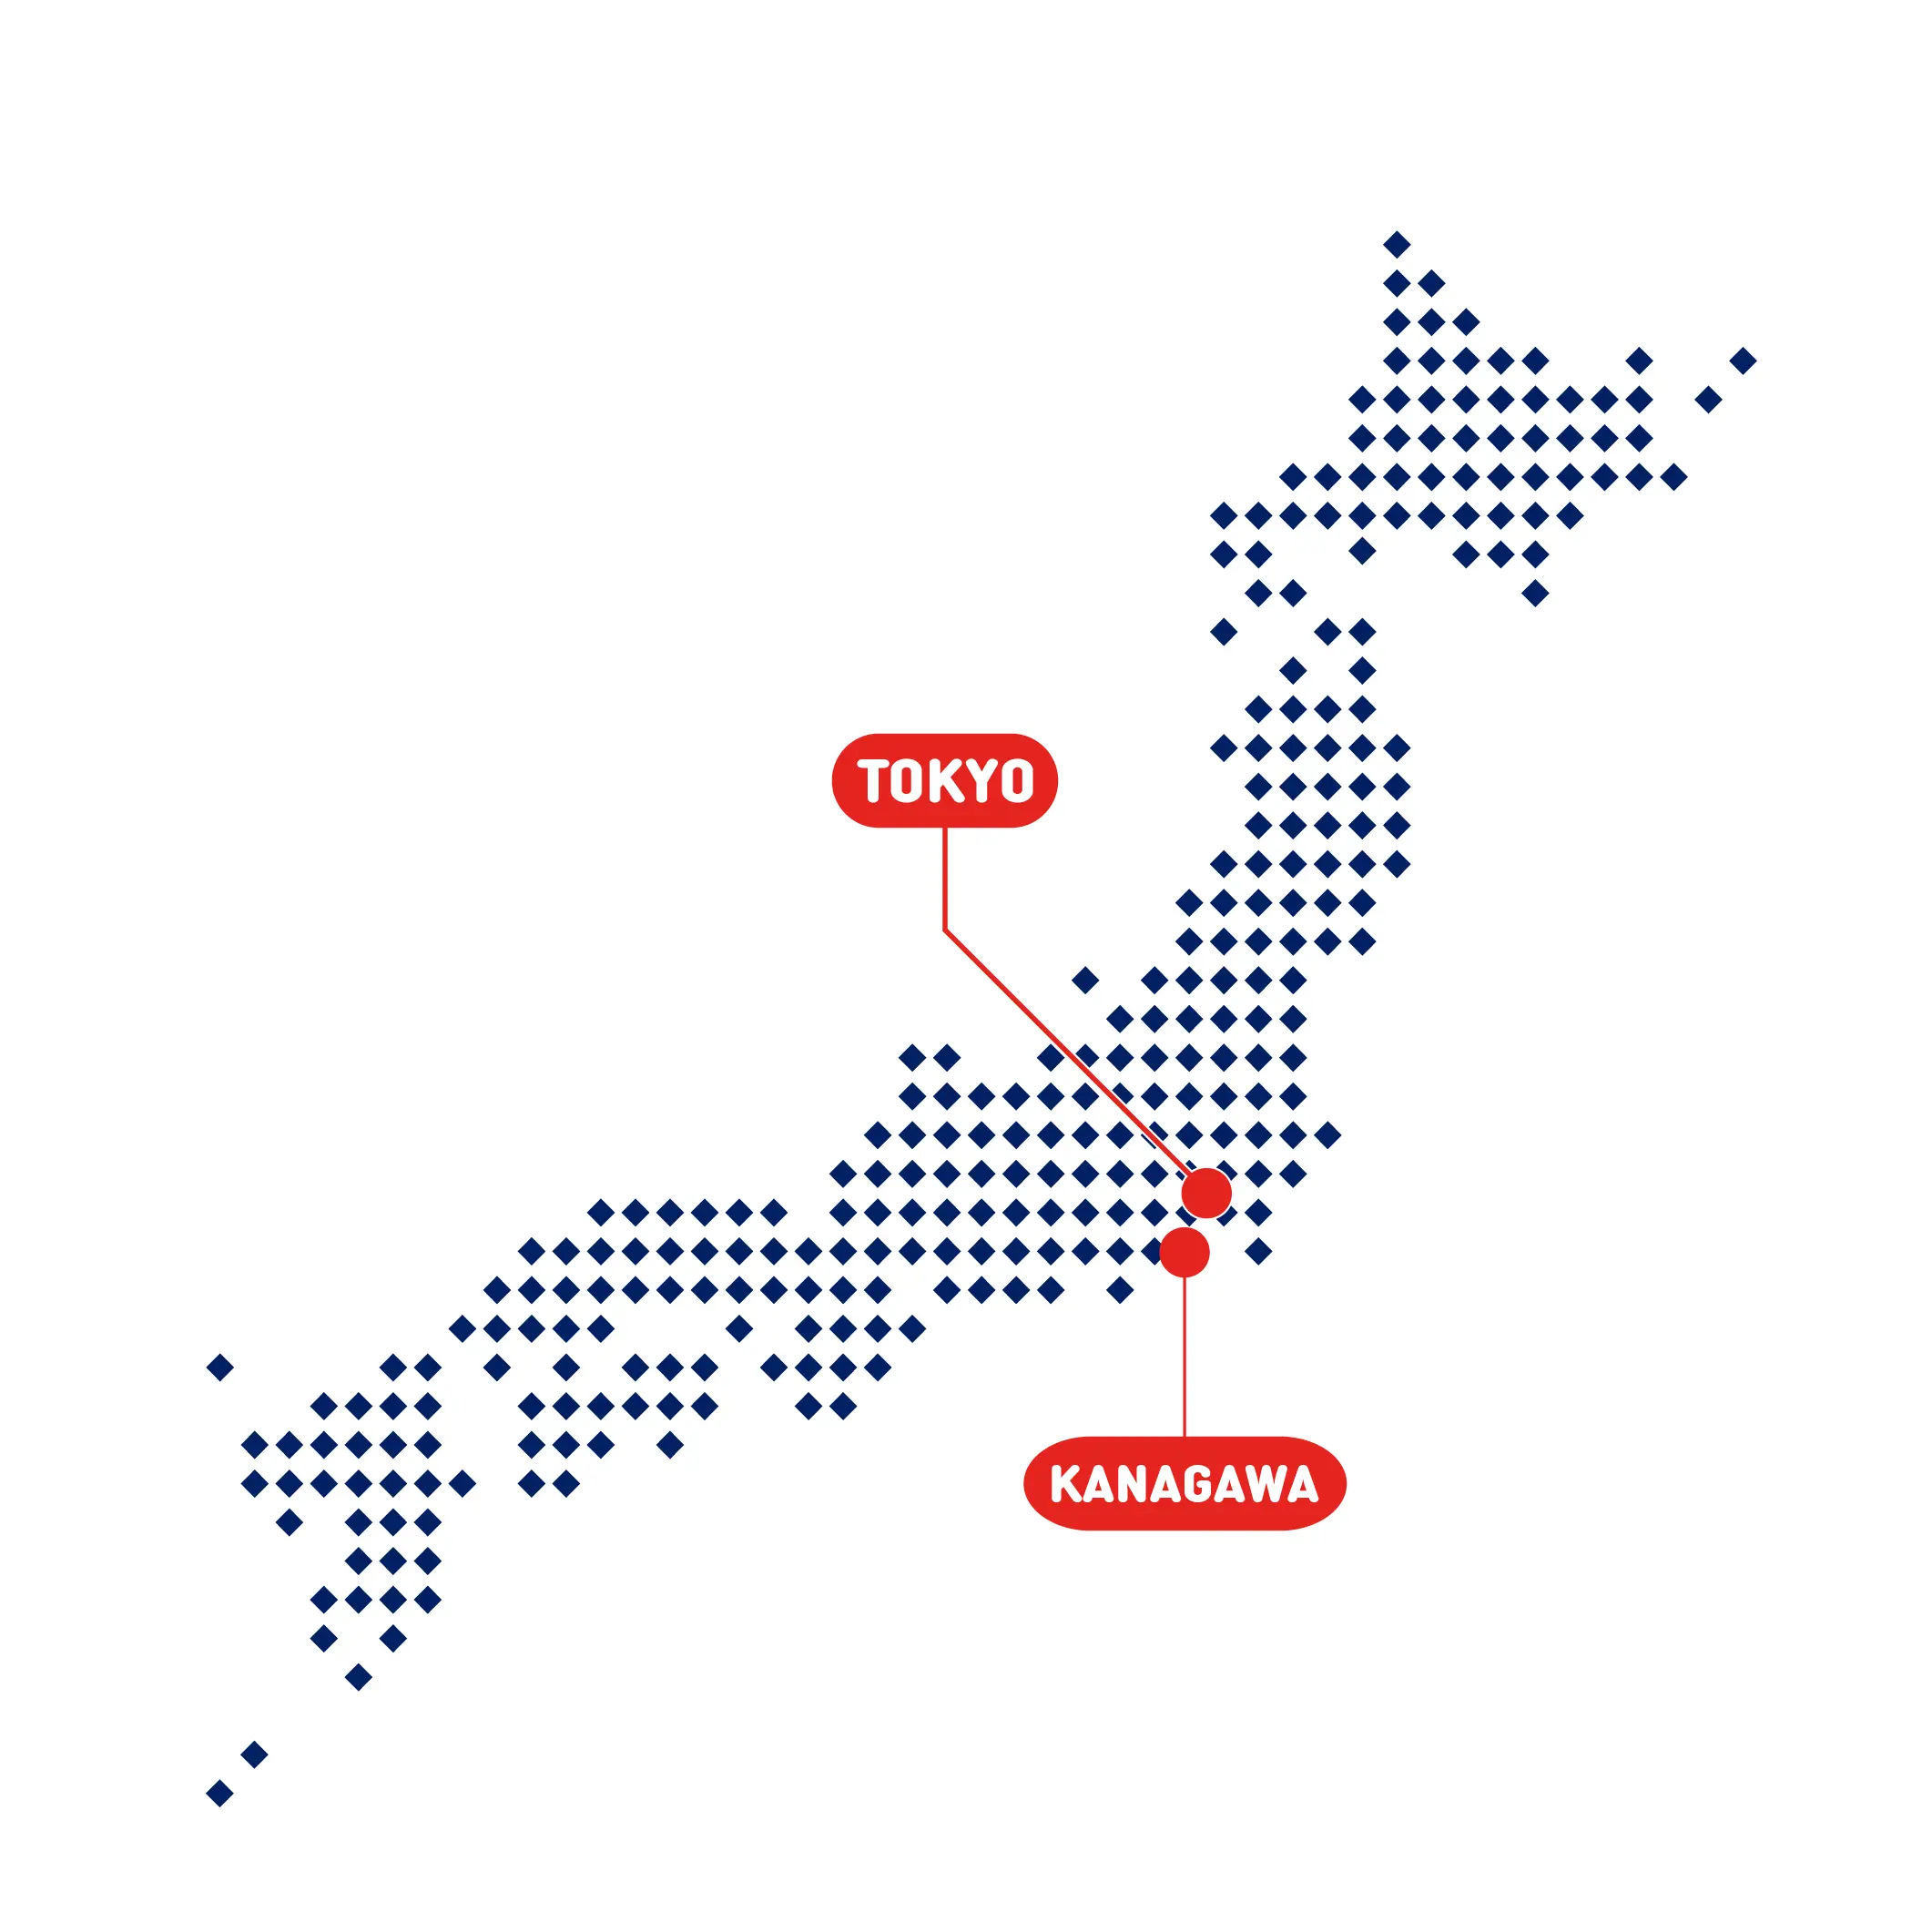 営業エリア 神奈川県と東京都の全域